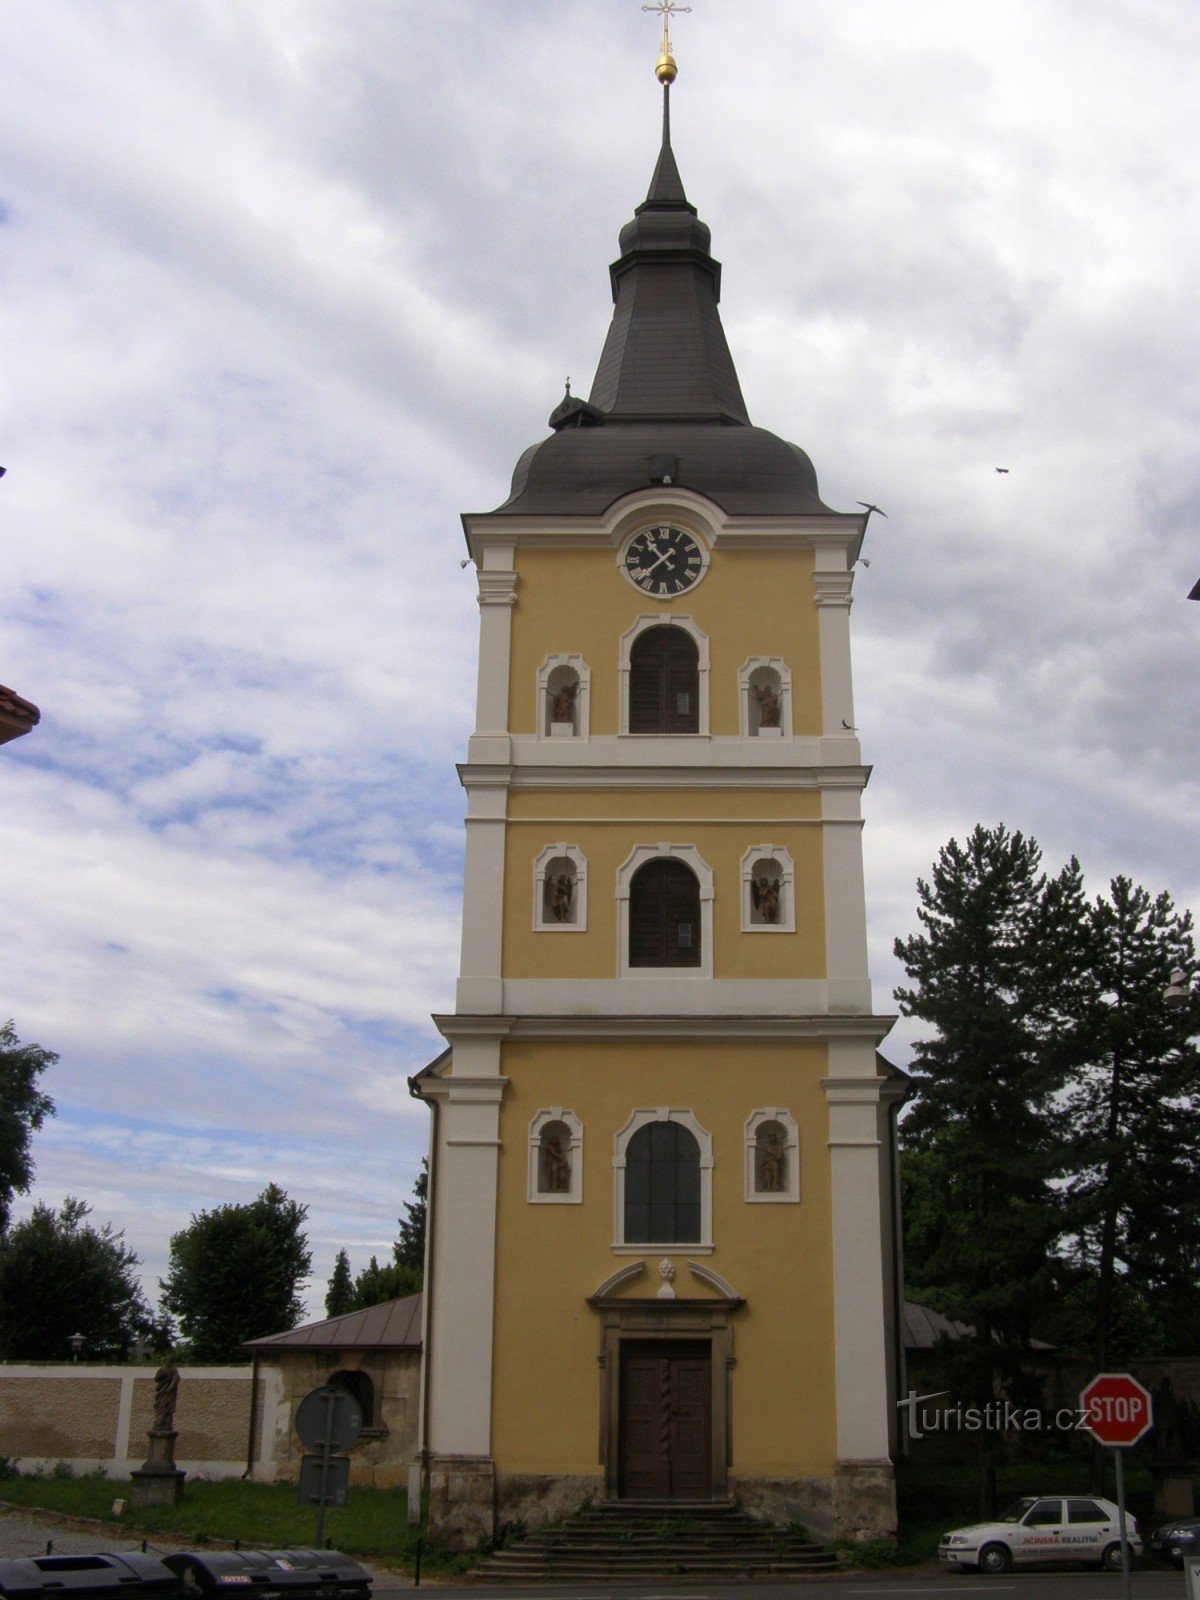 Jičín - Nhà thờ Đức Mẹ Bán